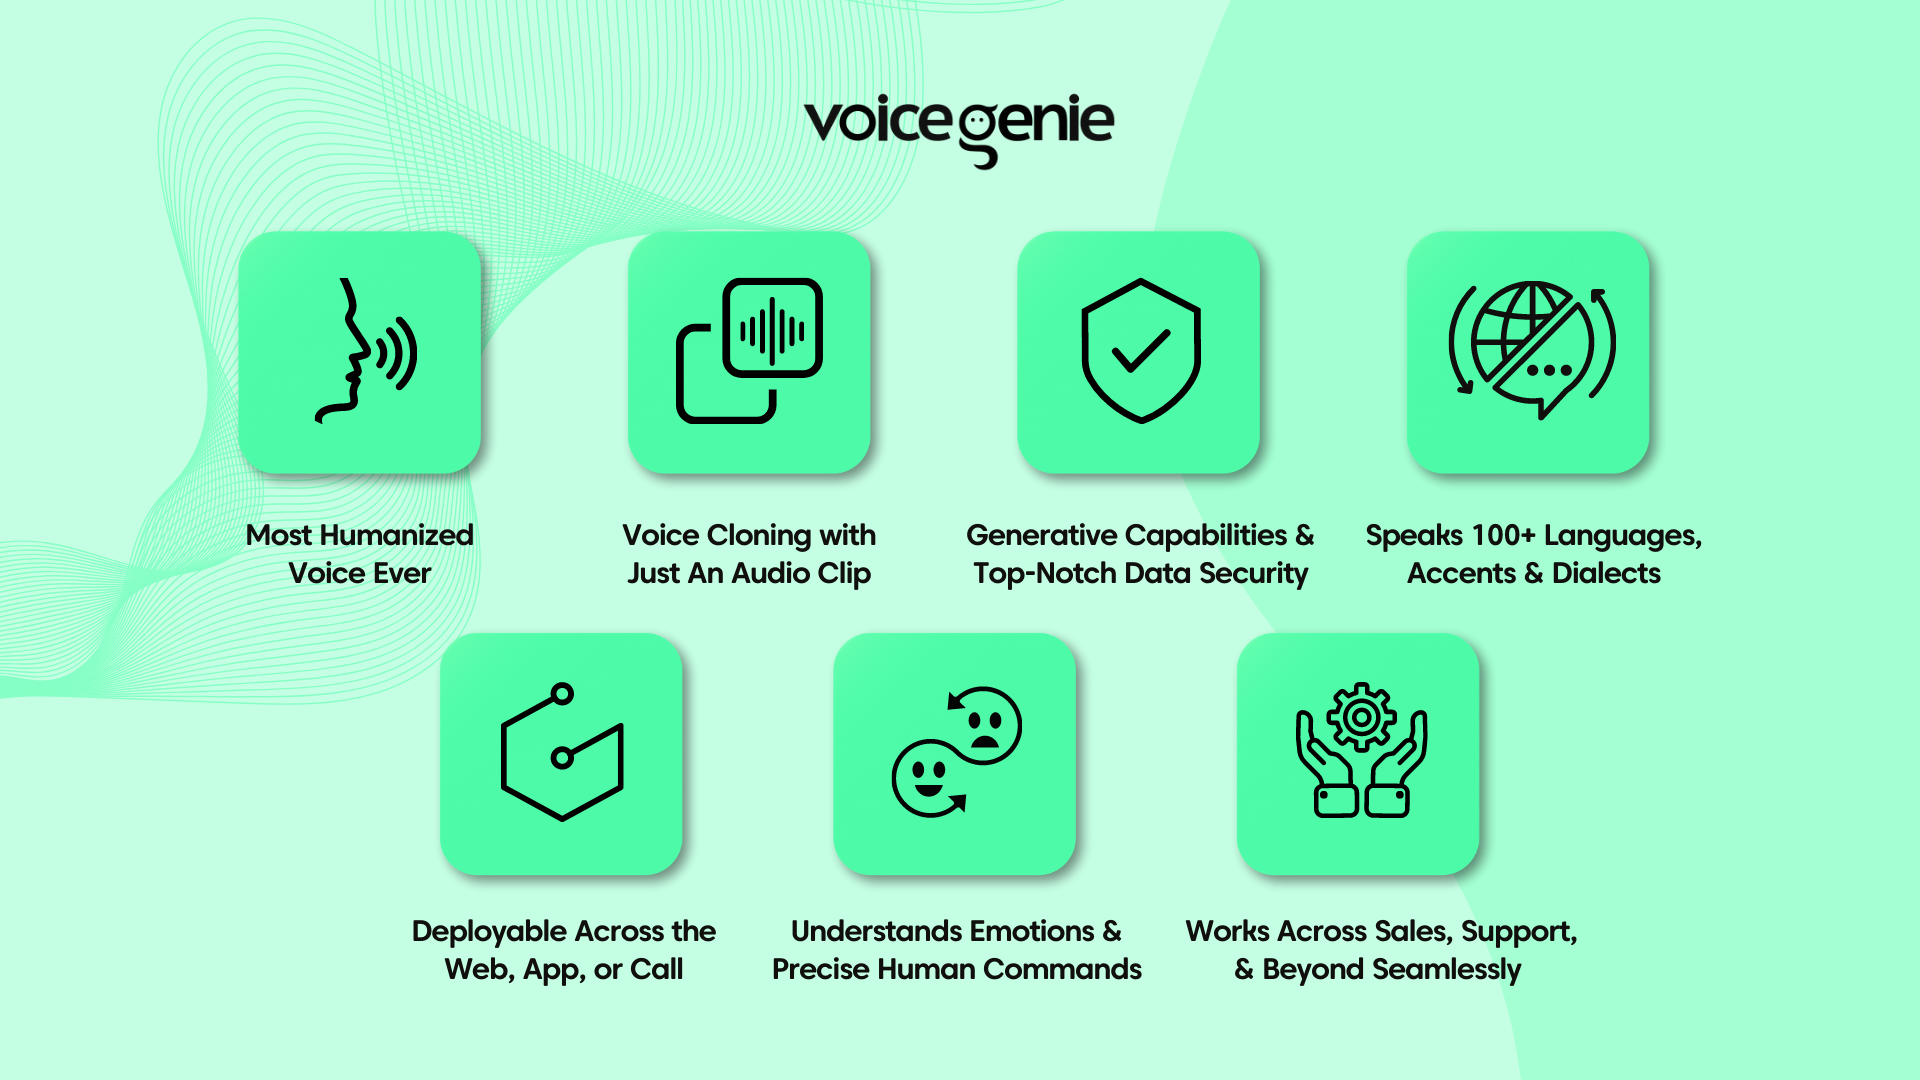 Features of VoiceGenie - A Glimpse